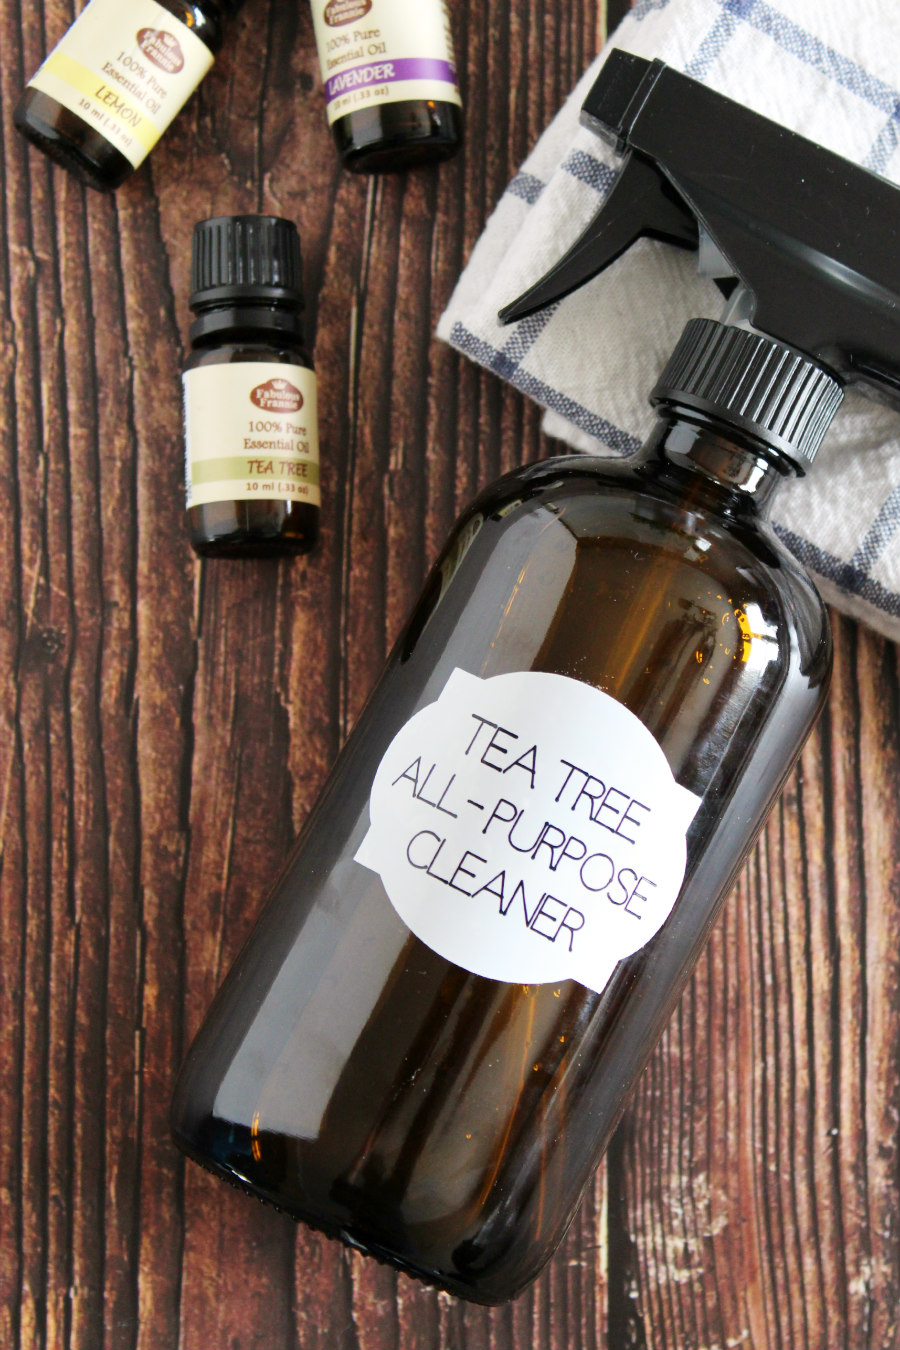 tea tree oil all purpose cleaner